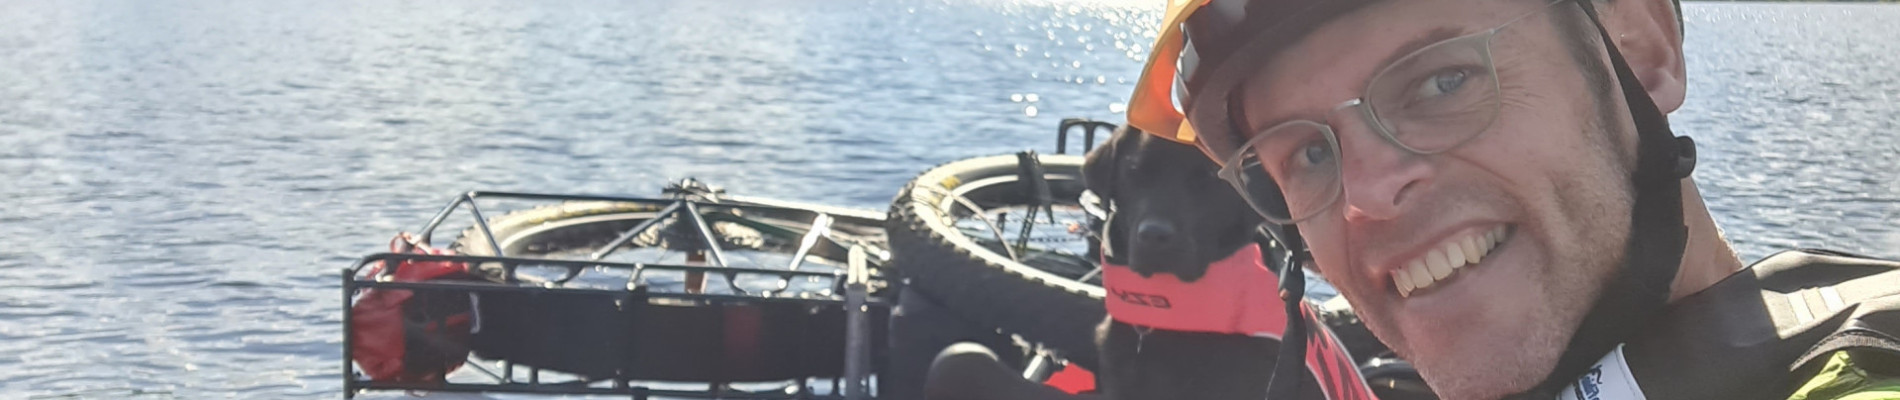 Peter-Paul samen met buddyhond in een boot